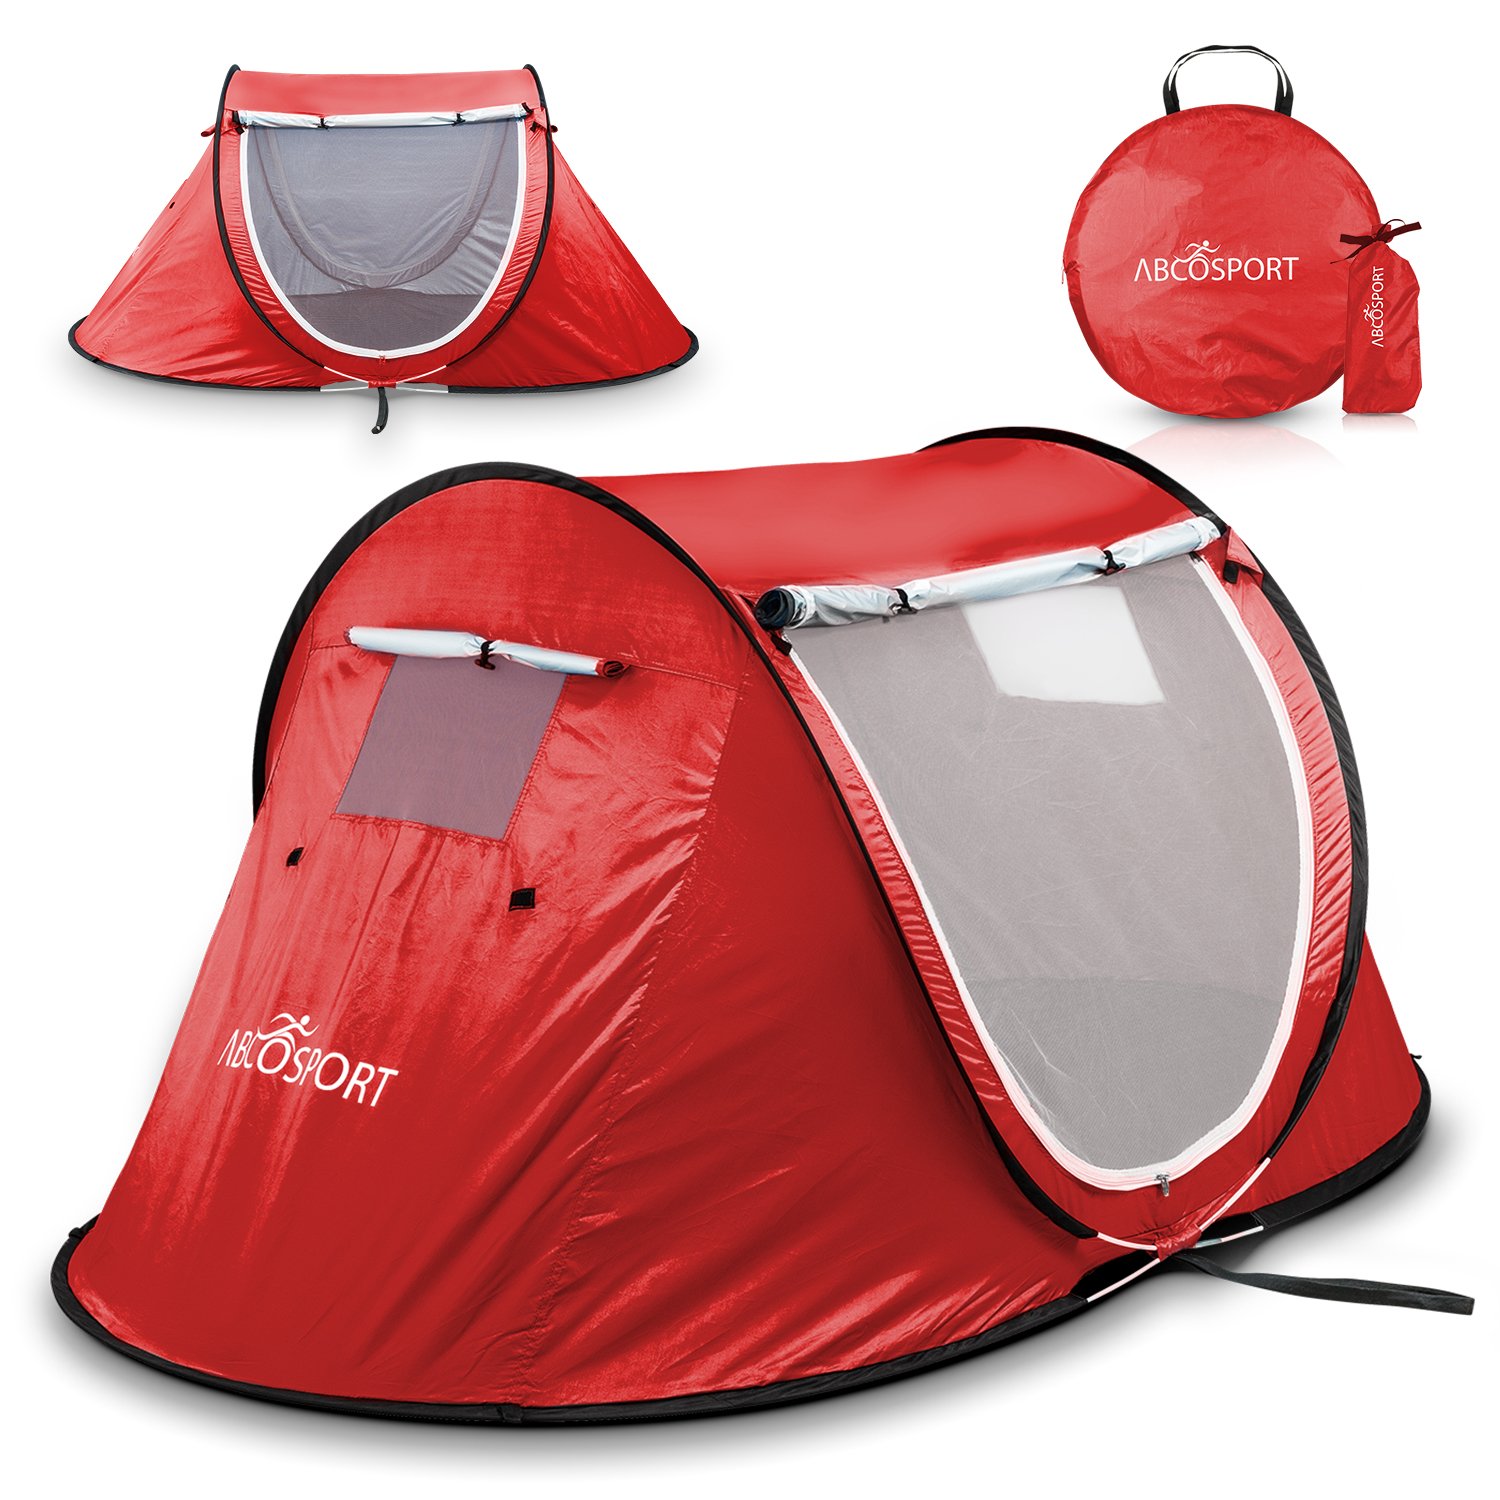 10. Abco Tech Pop up beach tent